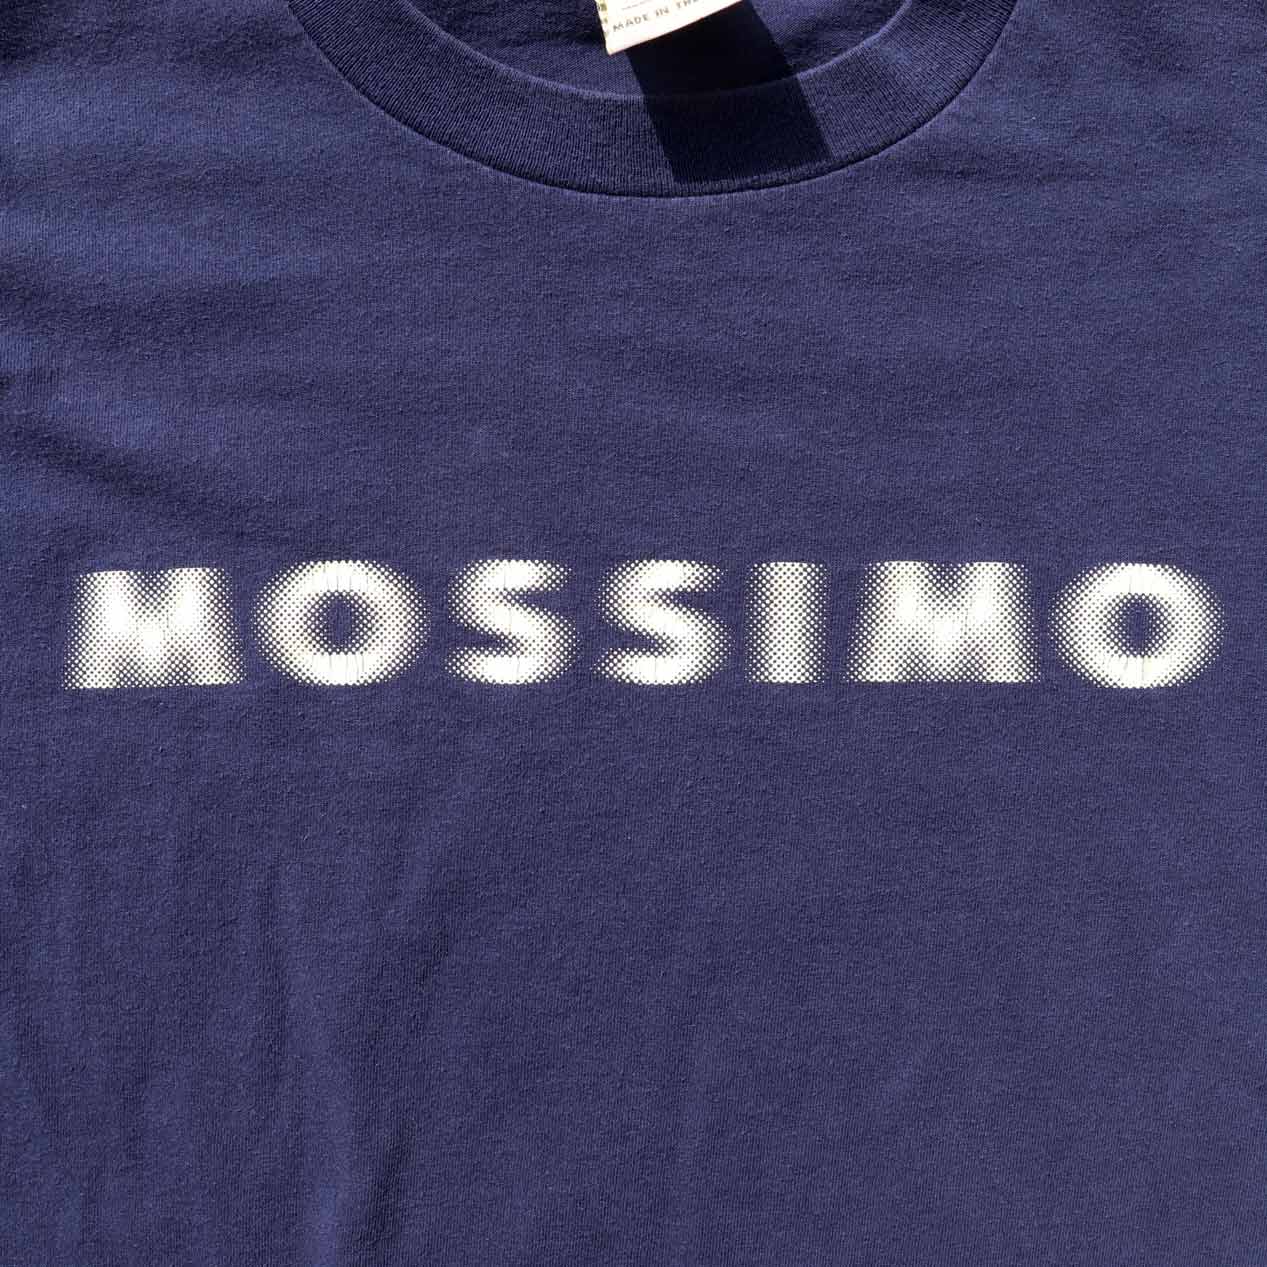 Mossimo ビンテージ グラフィック Tシャツ 90s Mサイズ USA製